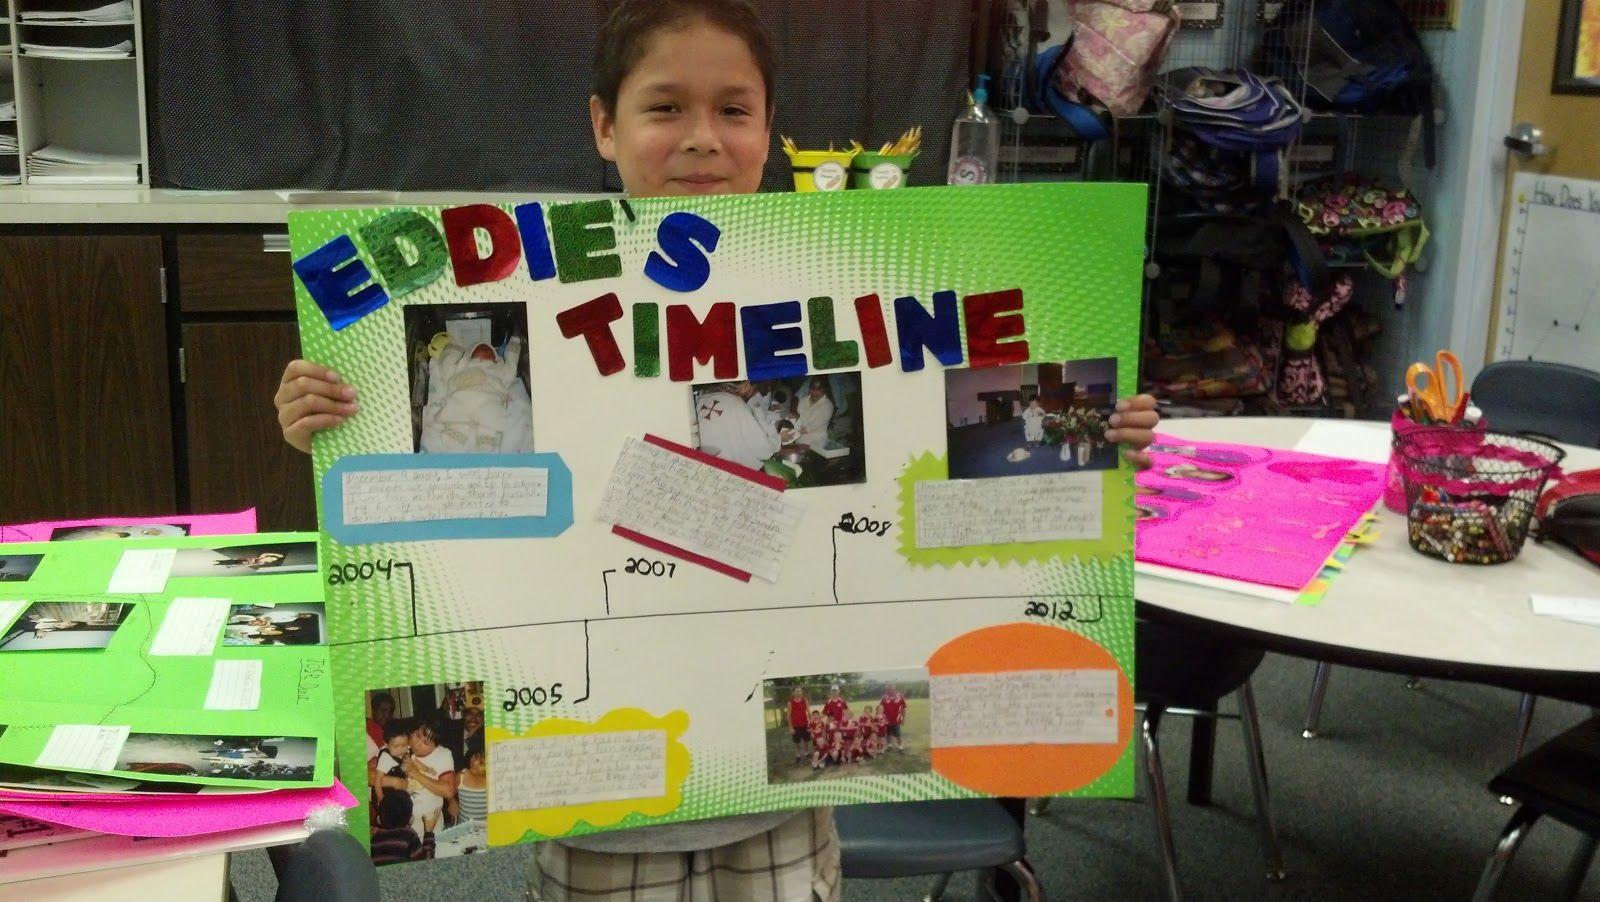 School Project Ideas For Kids
 Elementary School Timeline Projects